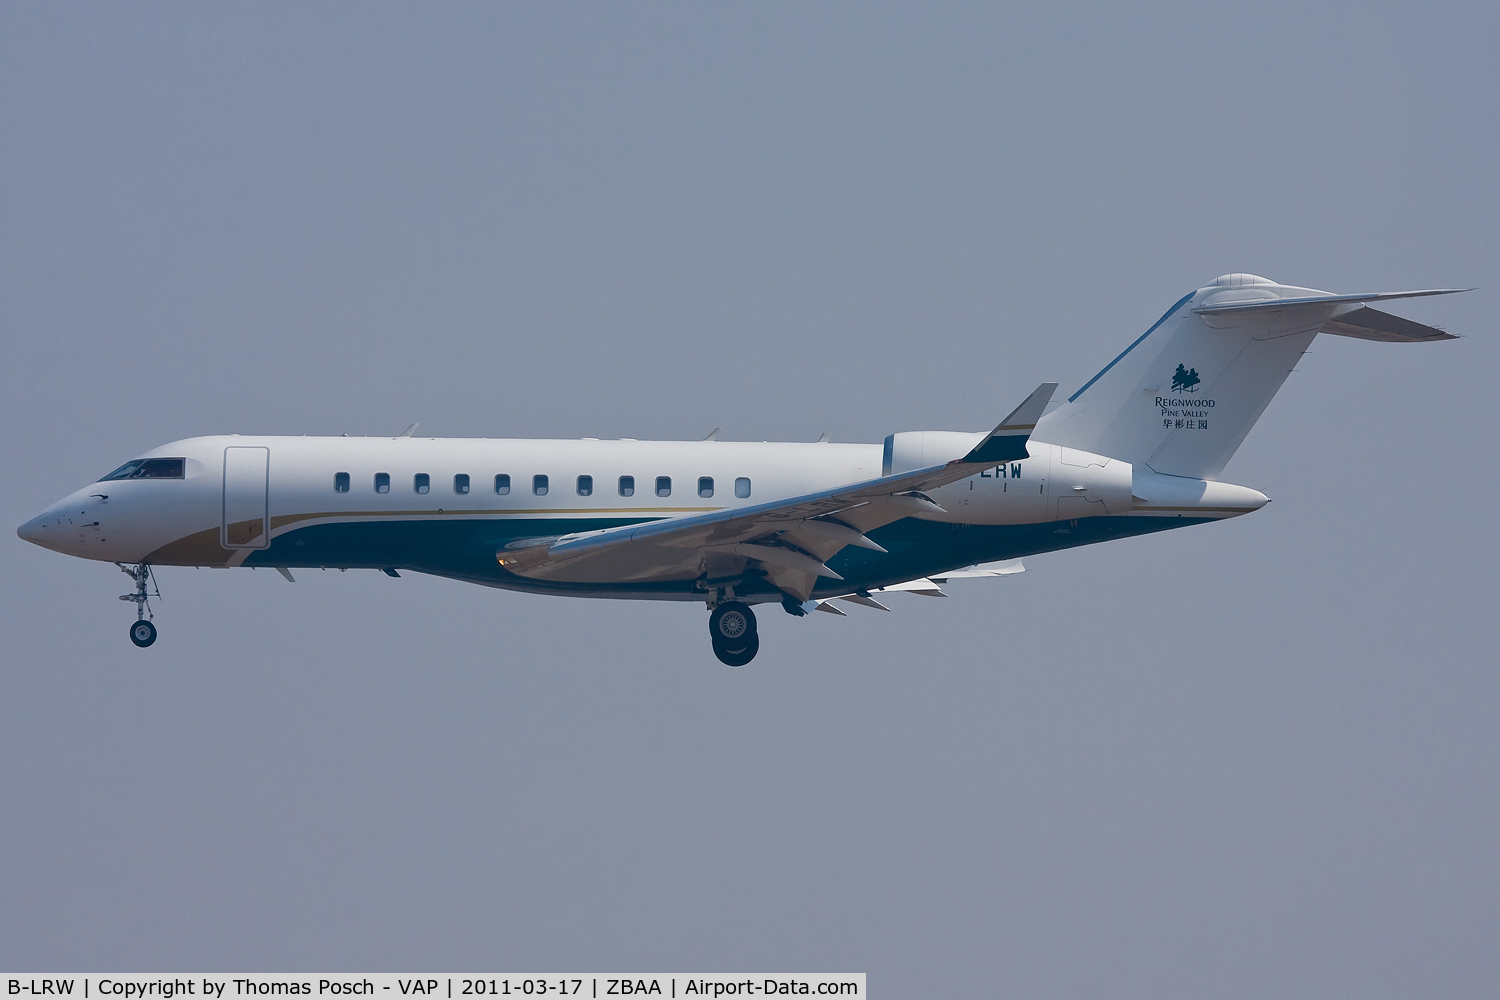 B-LRW, 2008 Bombardier BD-700-1A11 Global 5000 C/N 9315, TAG Aviation